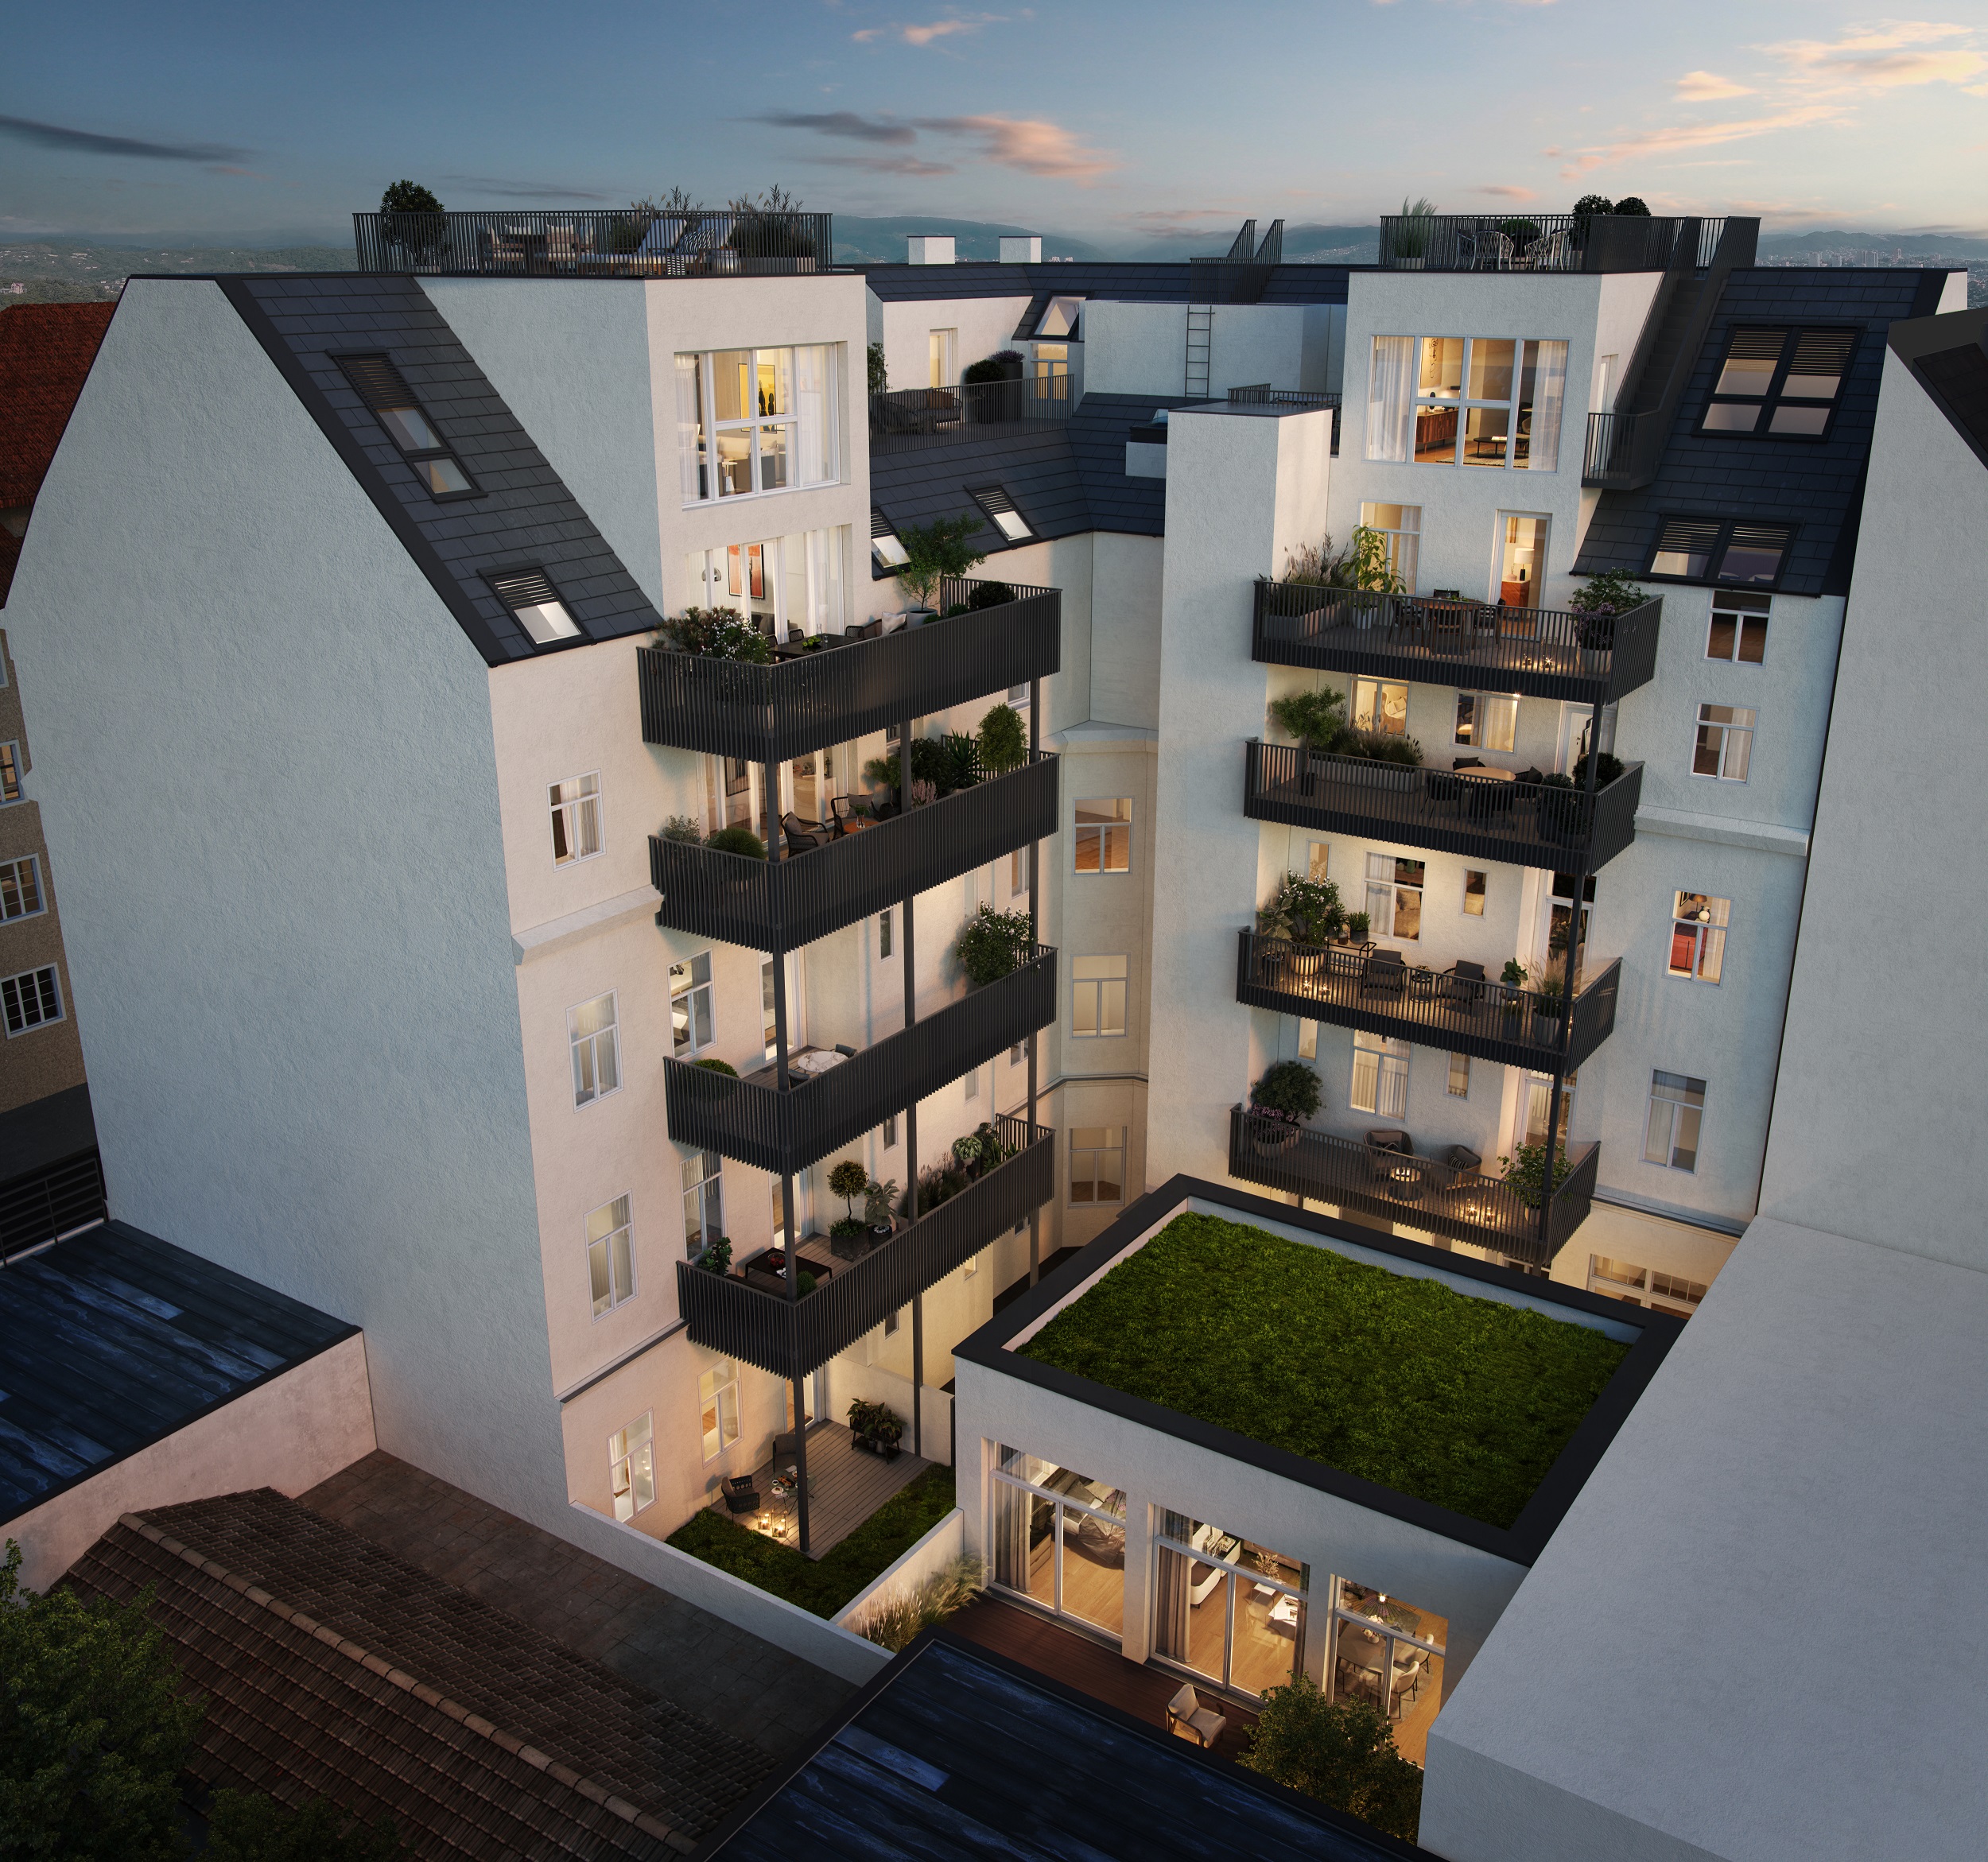 Die neu errichteten Freiflächen in Form von Balkonen, Terrassen und Eigengärten versprechen angenehme Stunden mit Blick in den ruhigen Innenhof.